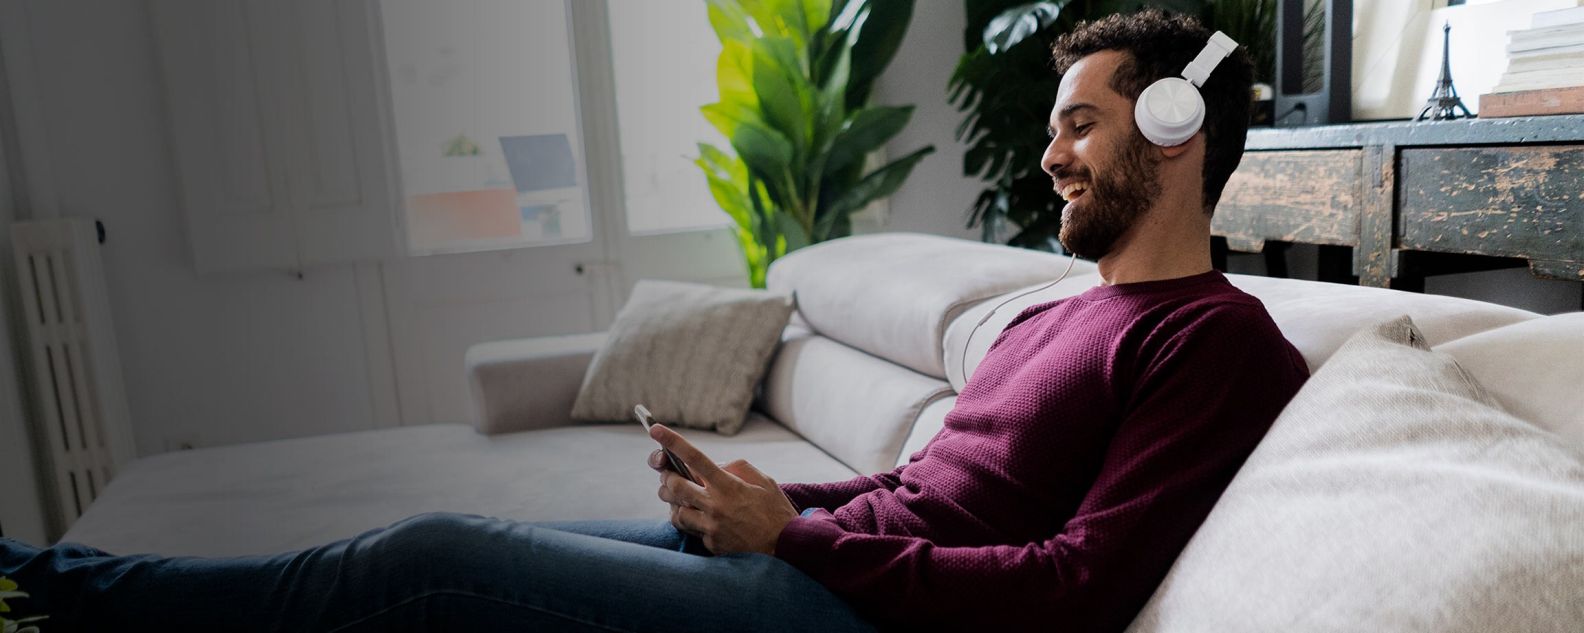 Homem rindo sentado no sofá com celular e fones de ouvido